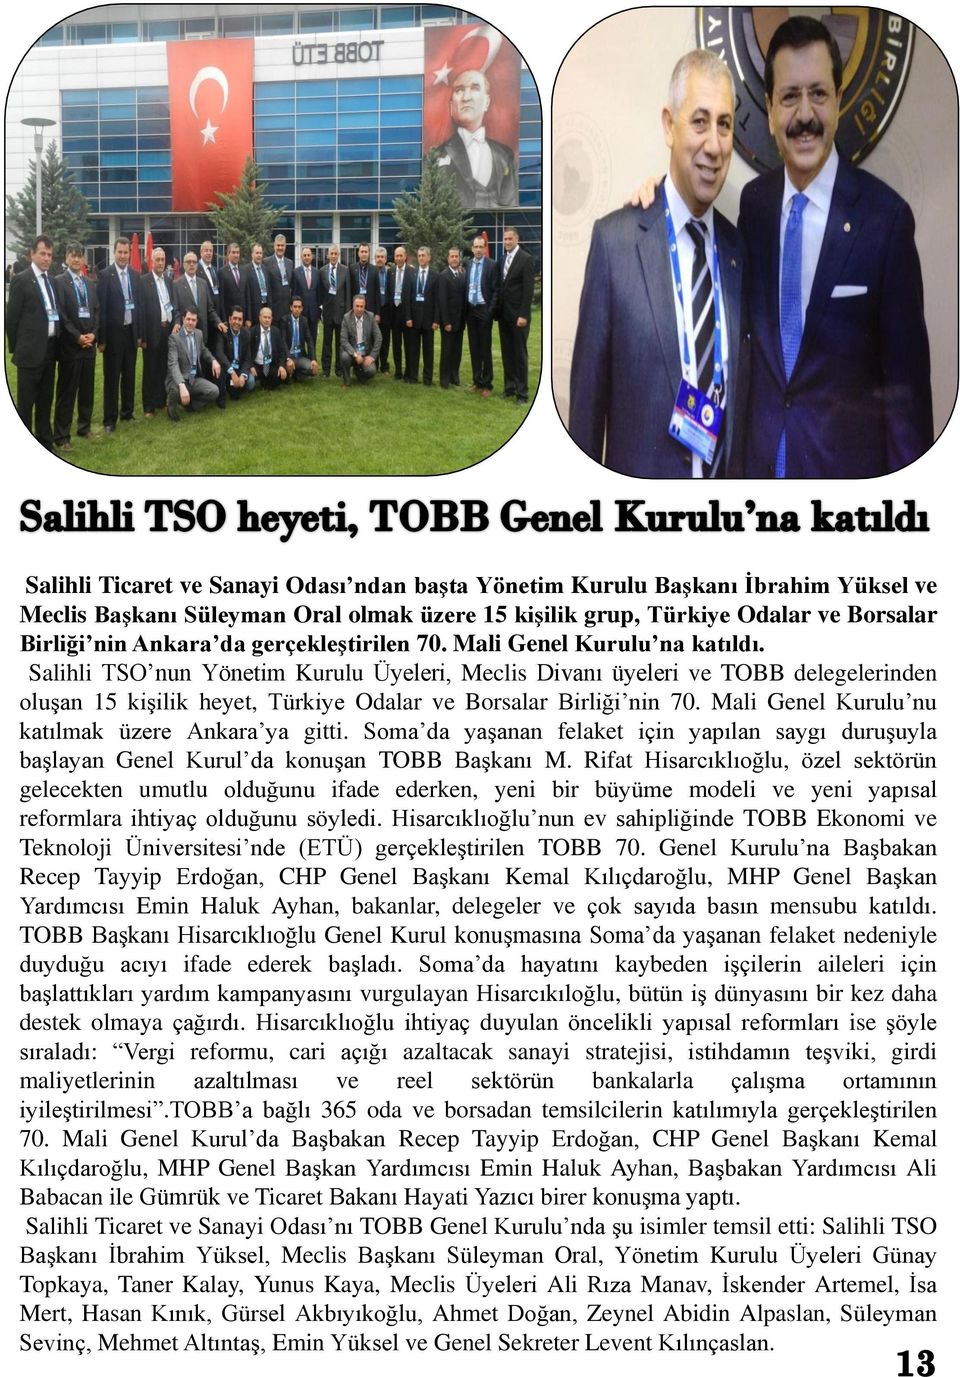 Salihli TSO nun Yönetim Kurulu Üyeleri, Meclis Divanı üyeleri ve TOBB delegelerinden oluşan 15 kişilik heyet, Türkiye Odalar ve Borsalar Birliği nin 70.